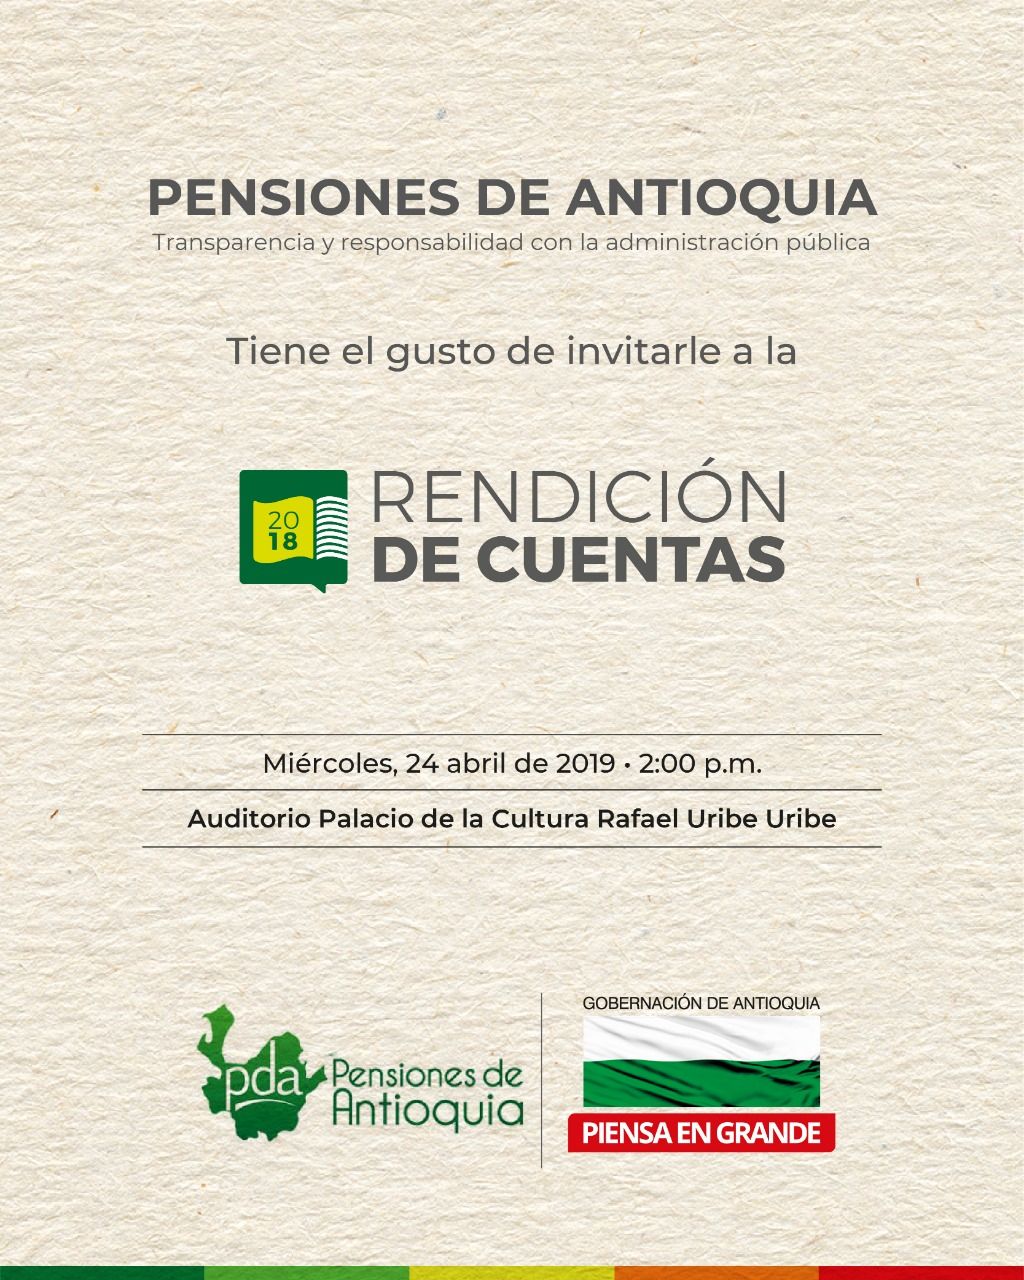 Invitación a la rendición de cuentas Pensiones Antioquia, miércoles 24 de abril de 2019